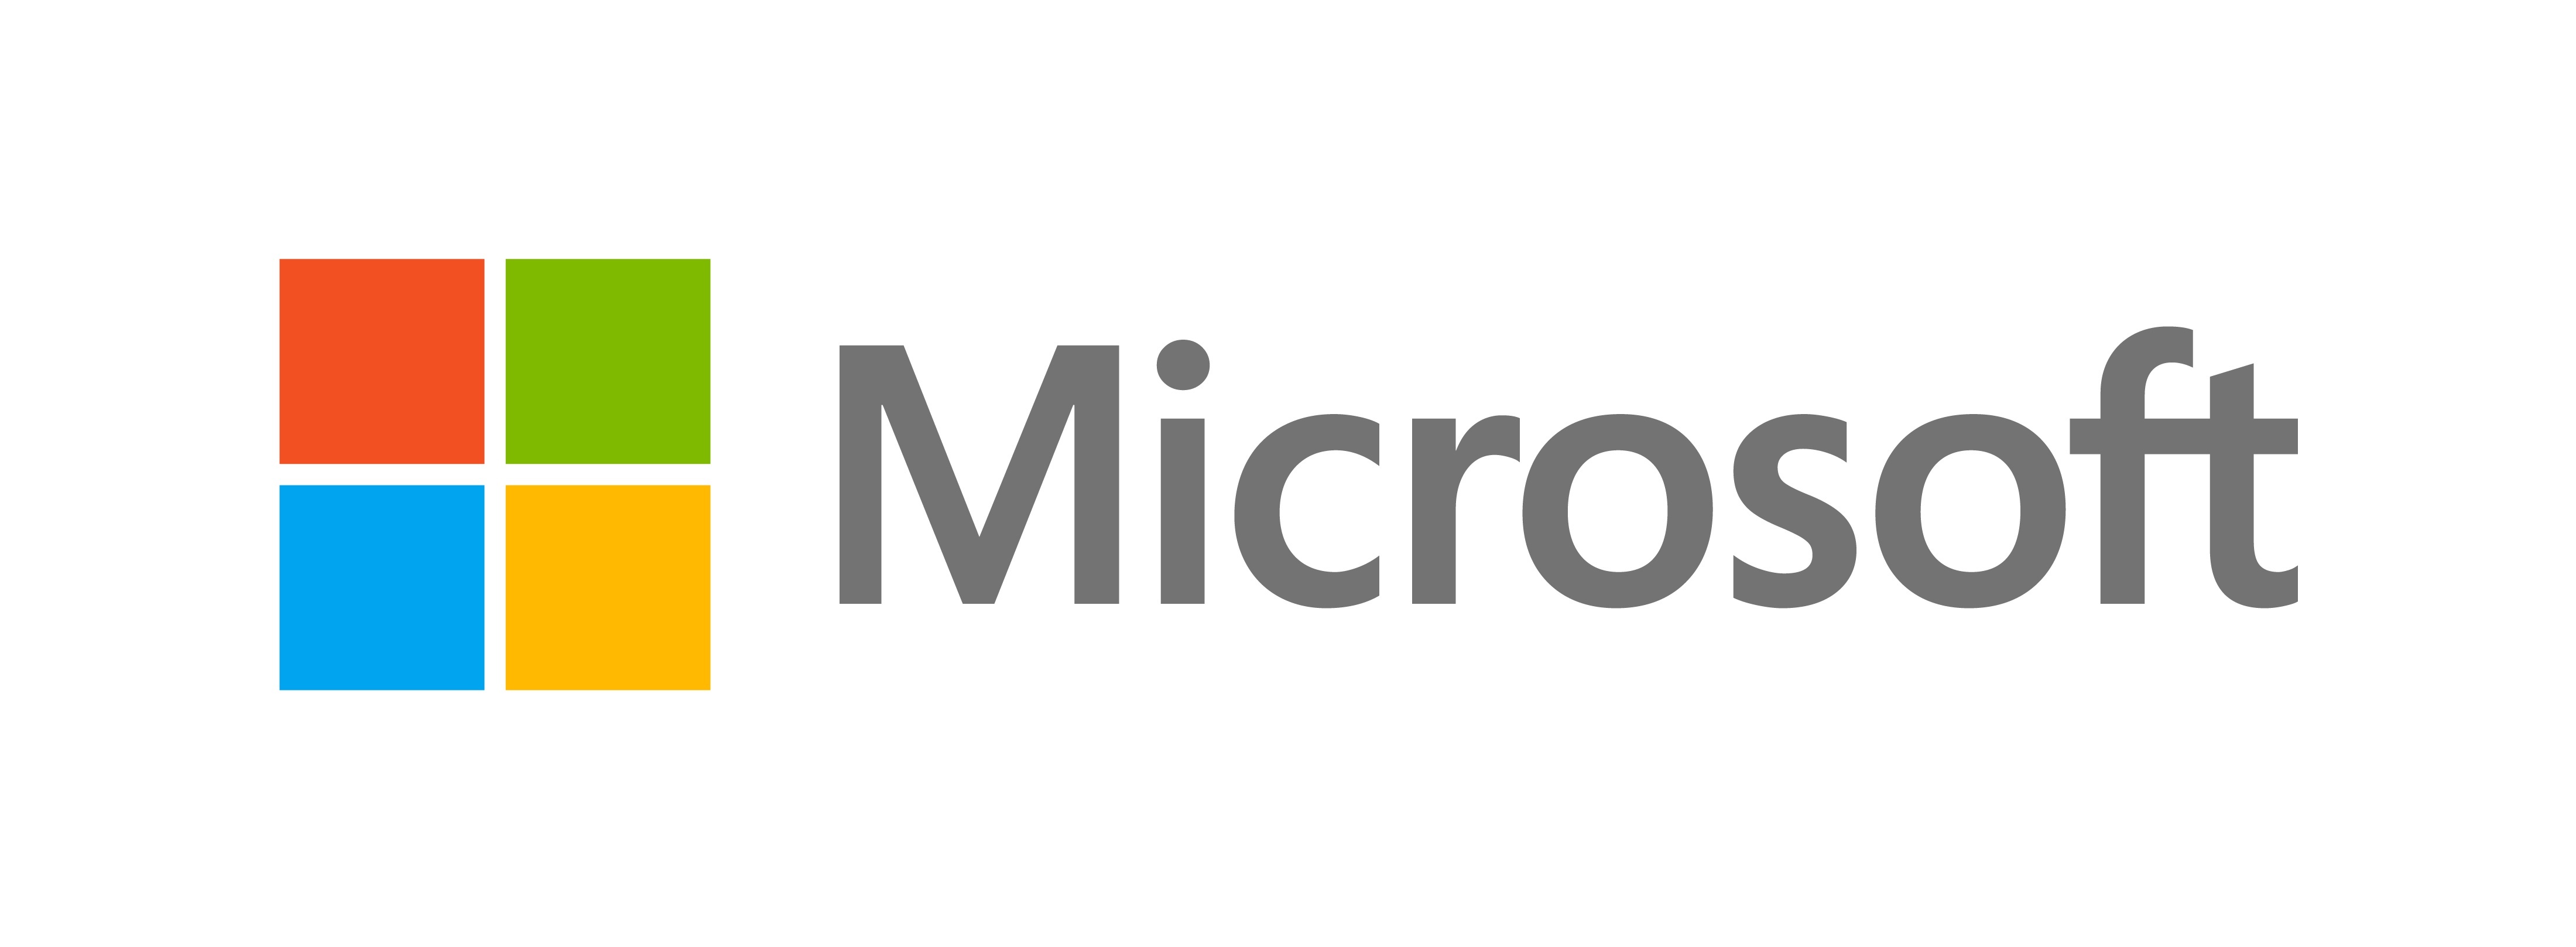 Microsoft 365 pymes precios y características de cada versión | Neuronet